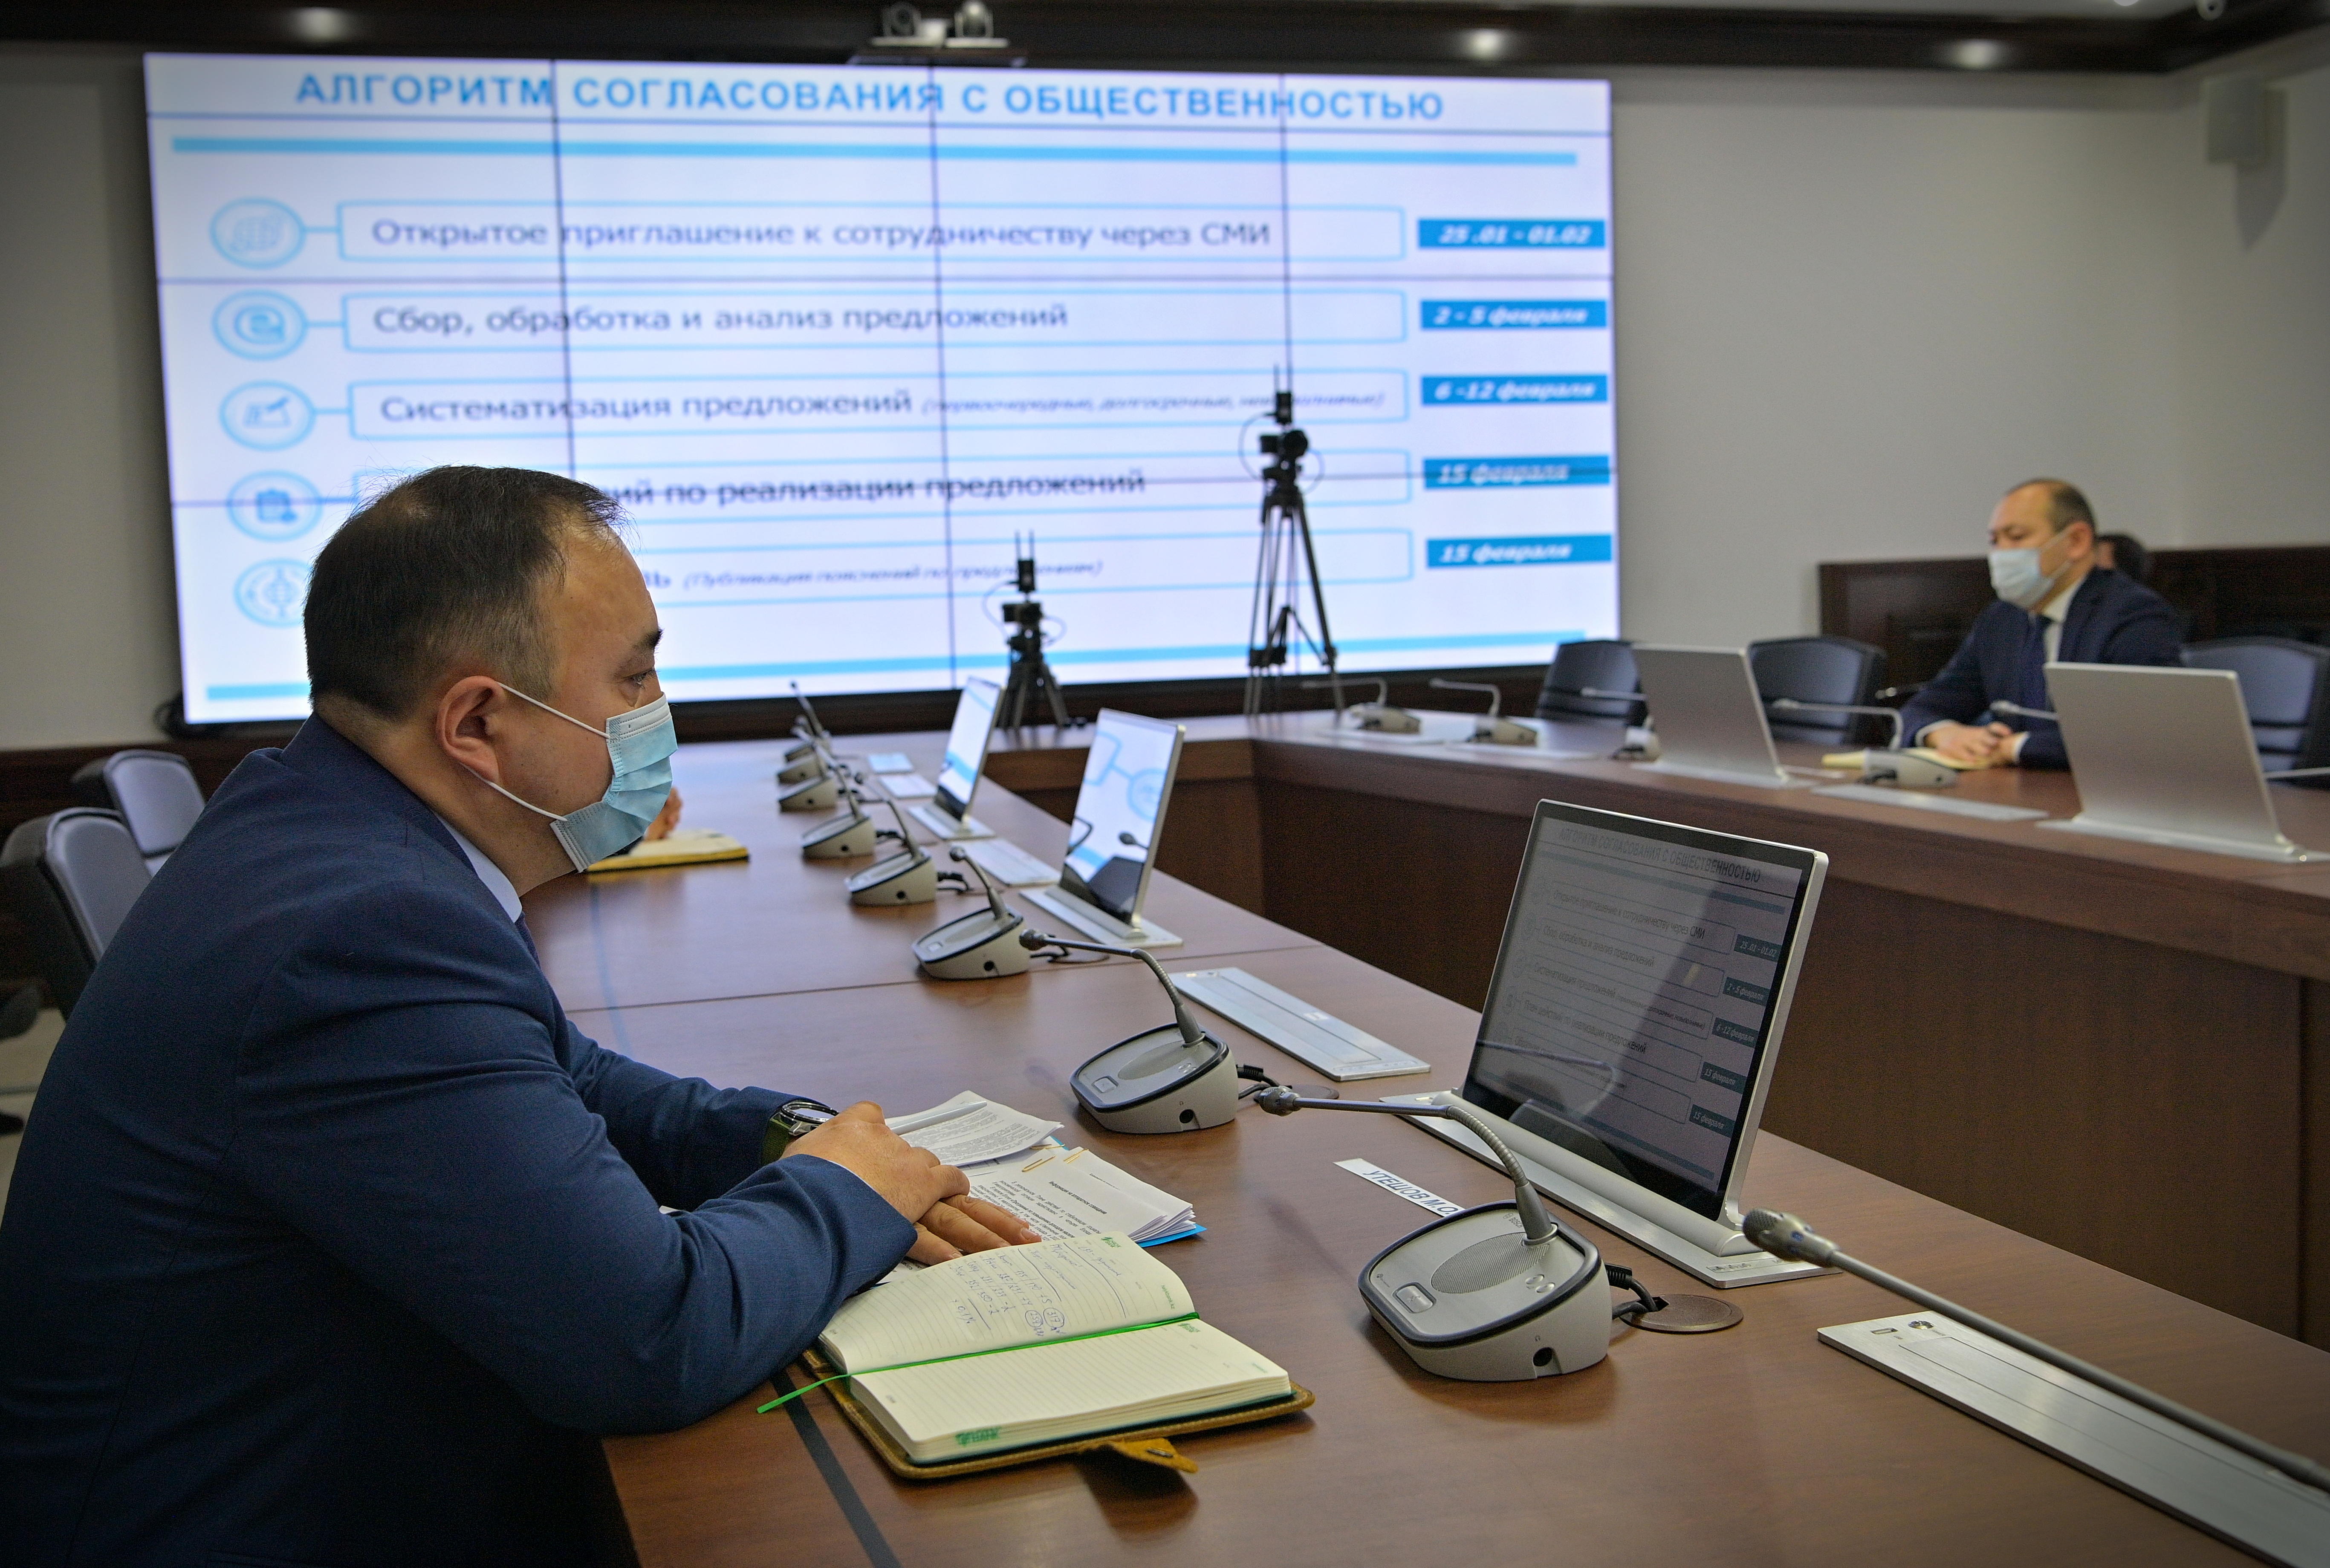 Павлодарцев призвали принять участие в формировании Программы действий по развитию региона на 2022 год